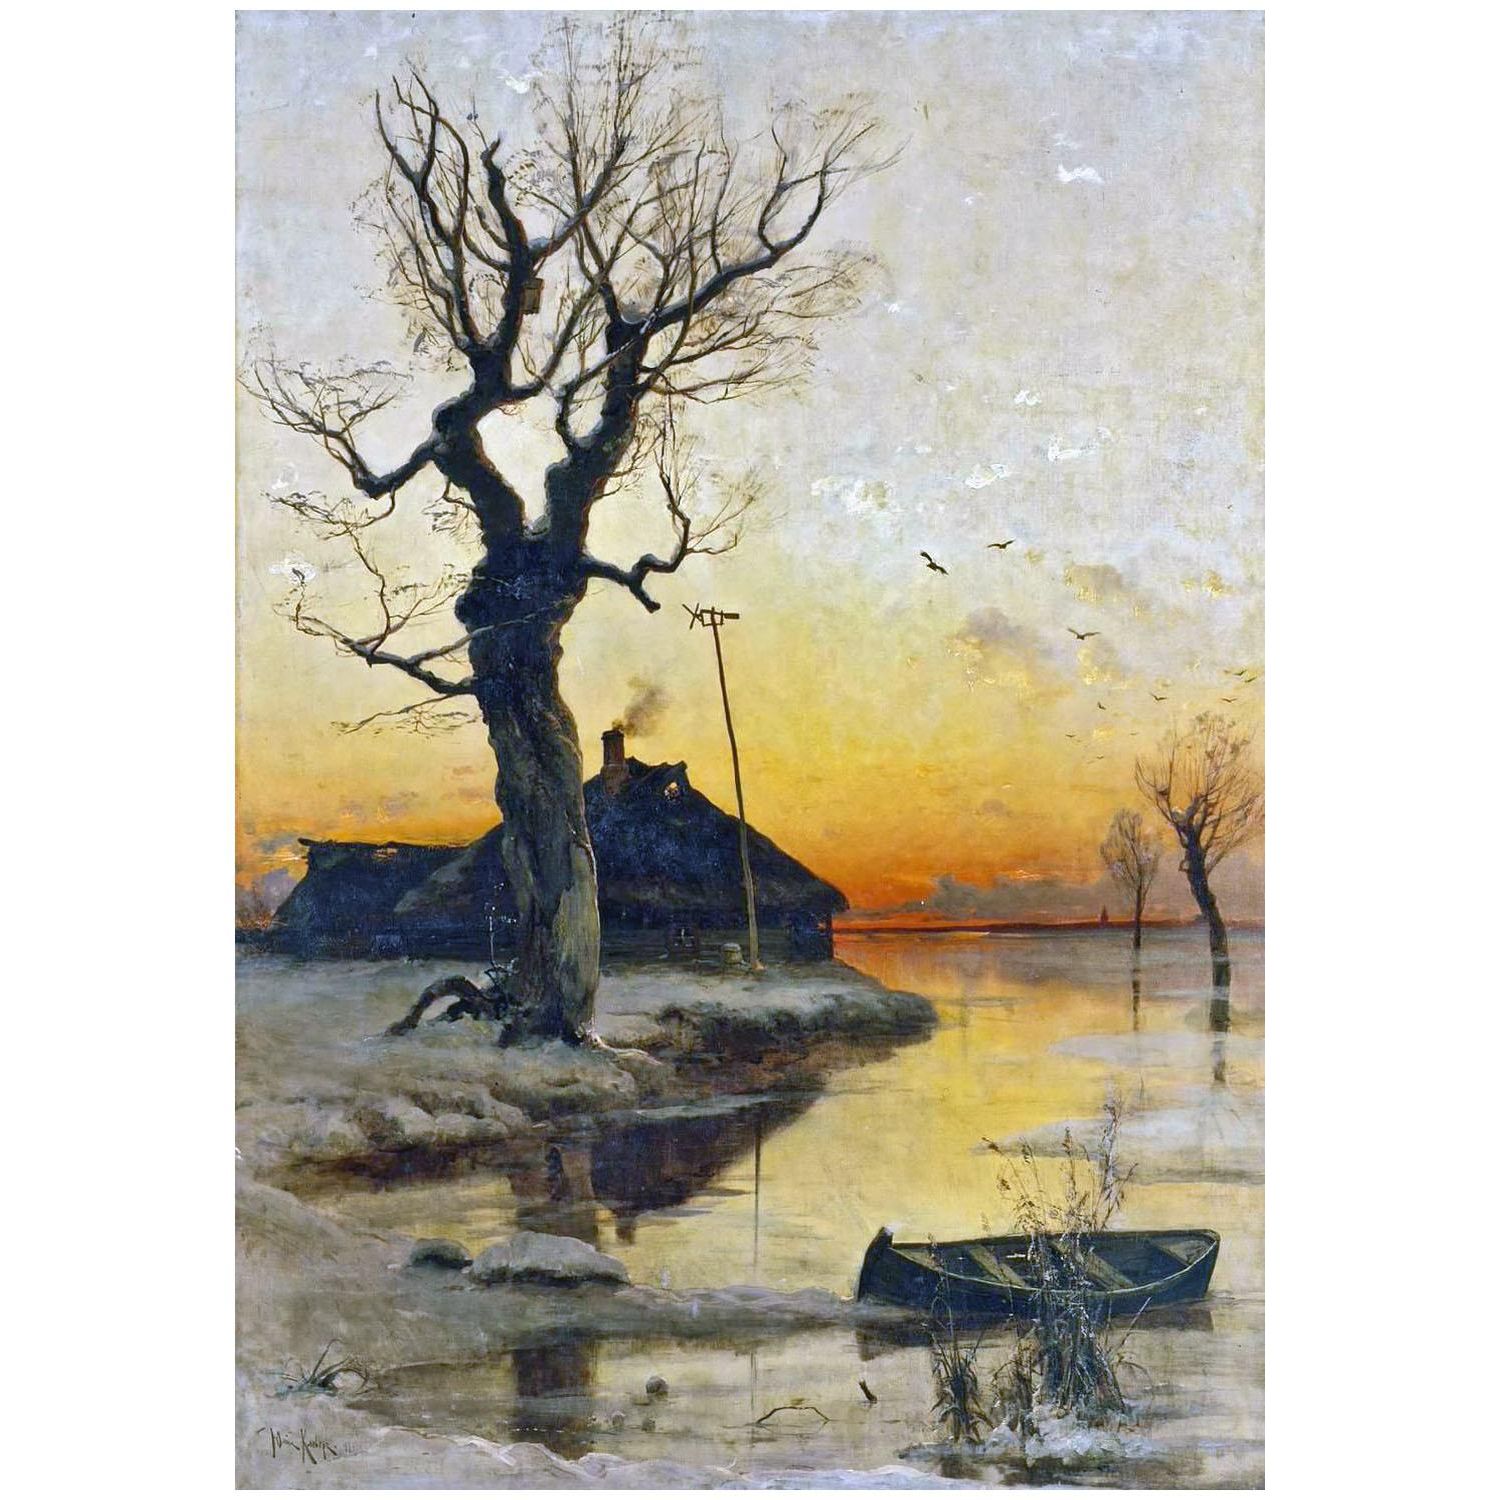 Юлий Клевер. Зимний пейзаж. 1891. Эрмитаж, Санкт-Птербург